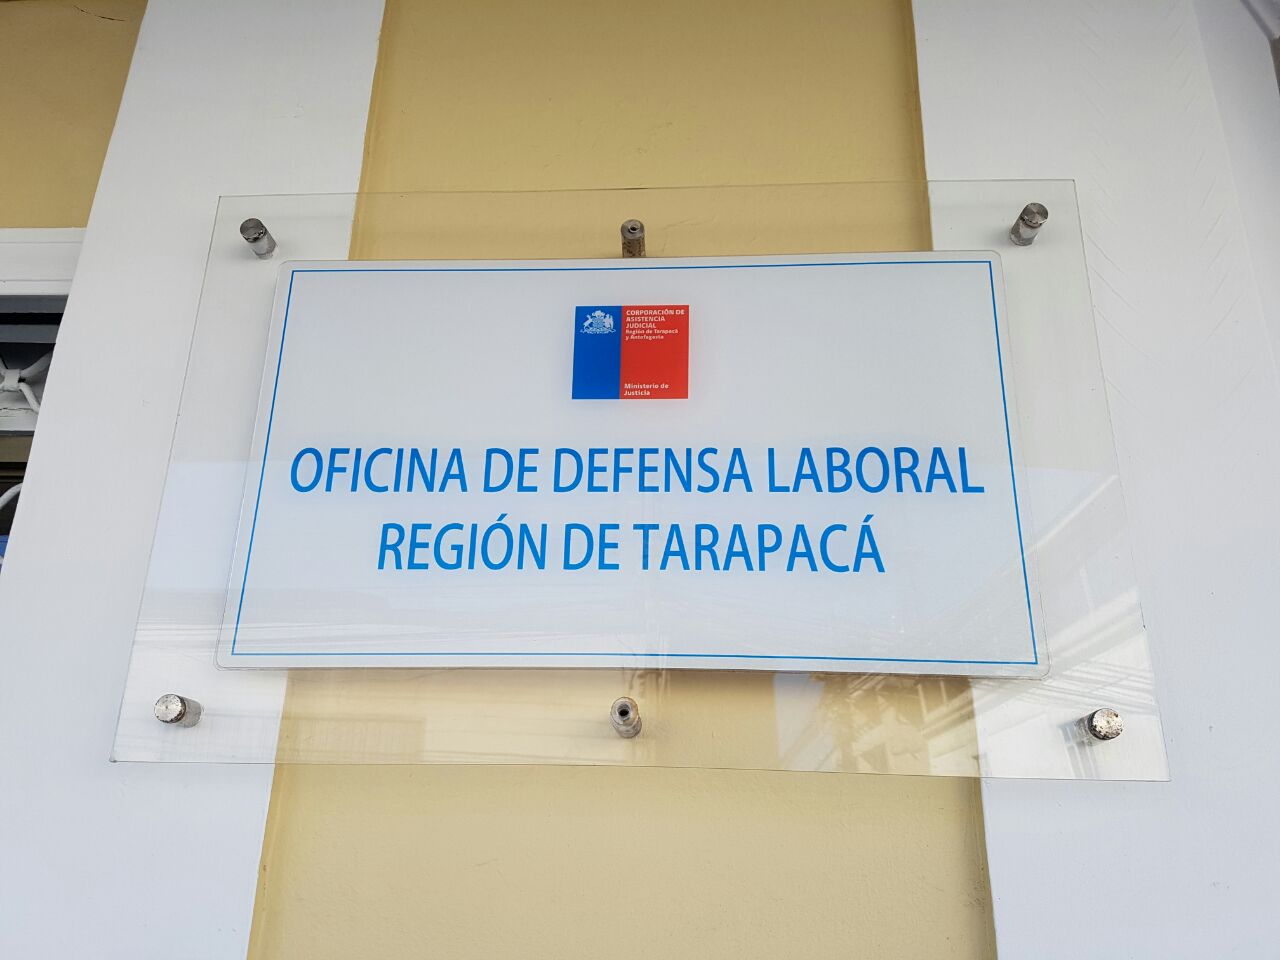 Oficina de Defensoría Laboral de Tarapacá hace gran aporte en la defensa de los derechos de las y los trabajadores de la zona